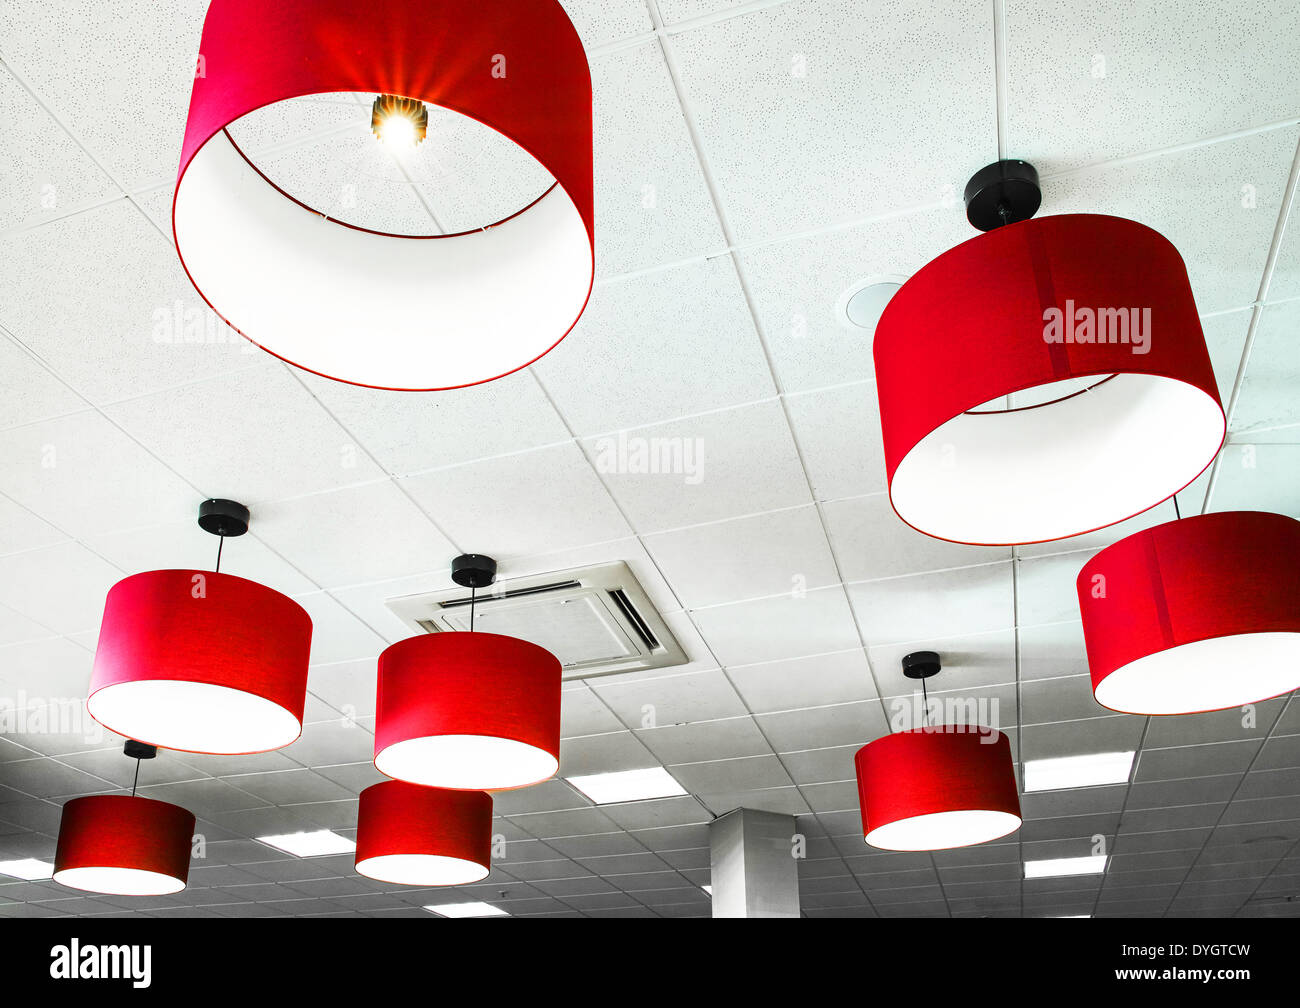 Lampade rosse immagini e fotografie stock ad alta risoluzione - Alamy